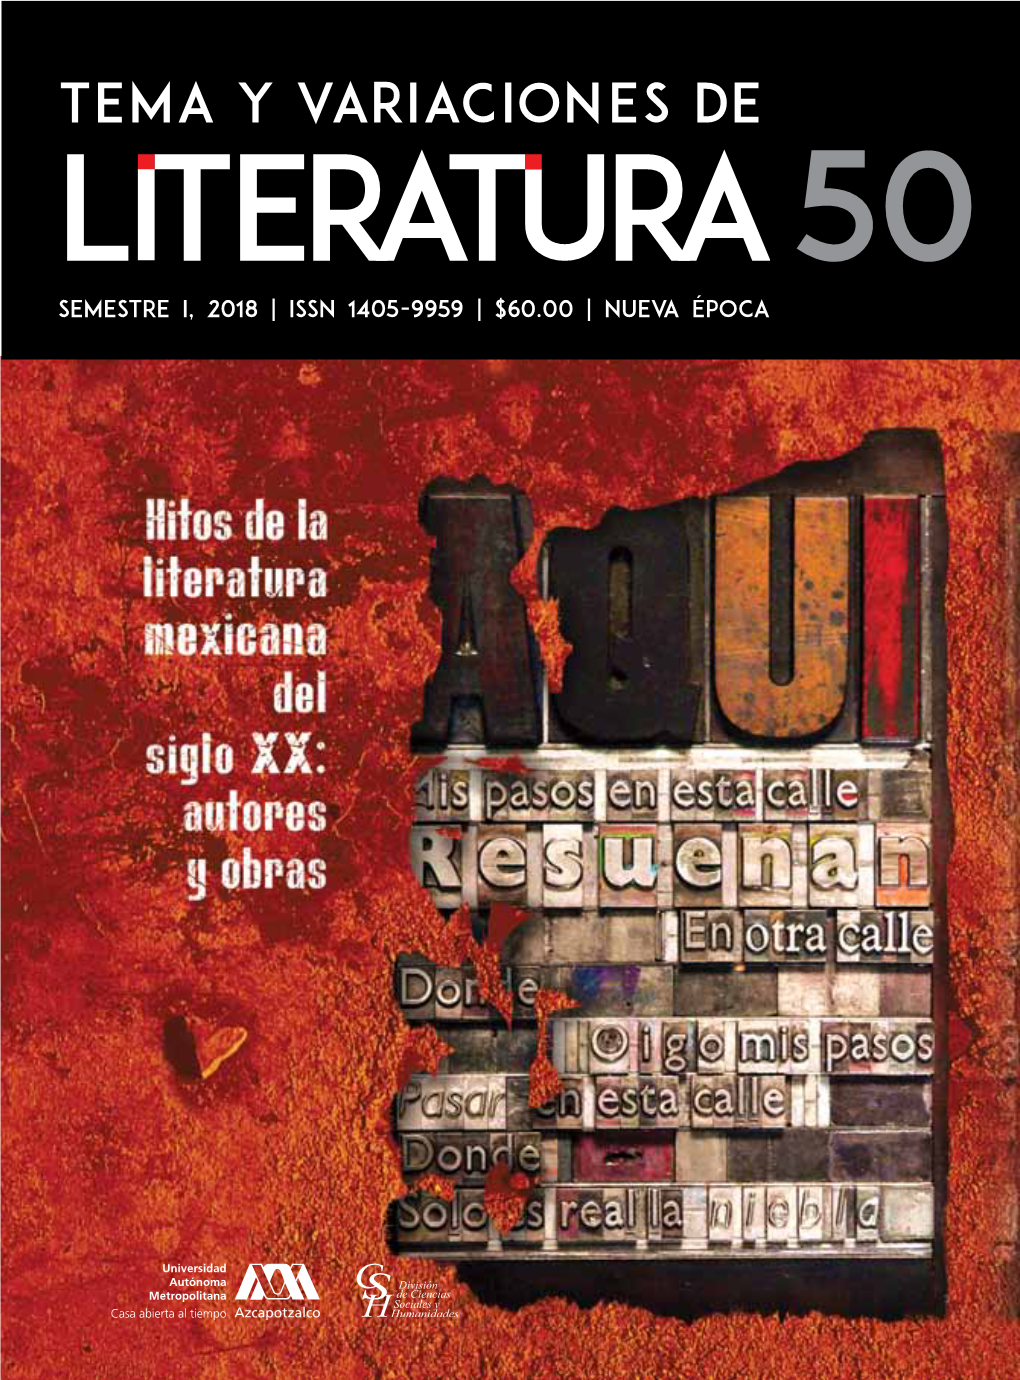 SEMESTRE I, 2018 | ISSN 1405-9959 | $60.00 | NUEVA ÉPOCA “Hitos De La Literatura Mexicana Del Siglo Xx: Autores Y Obras”